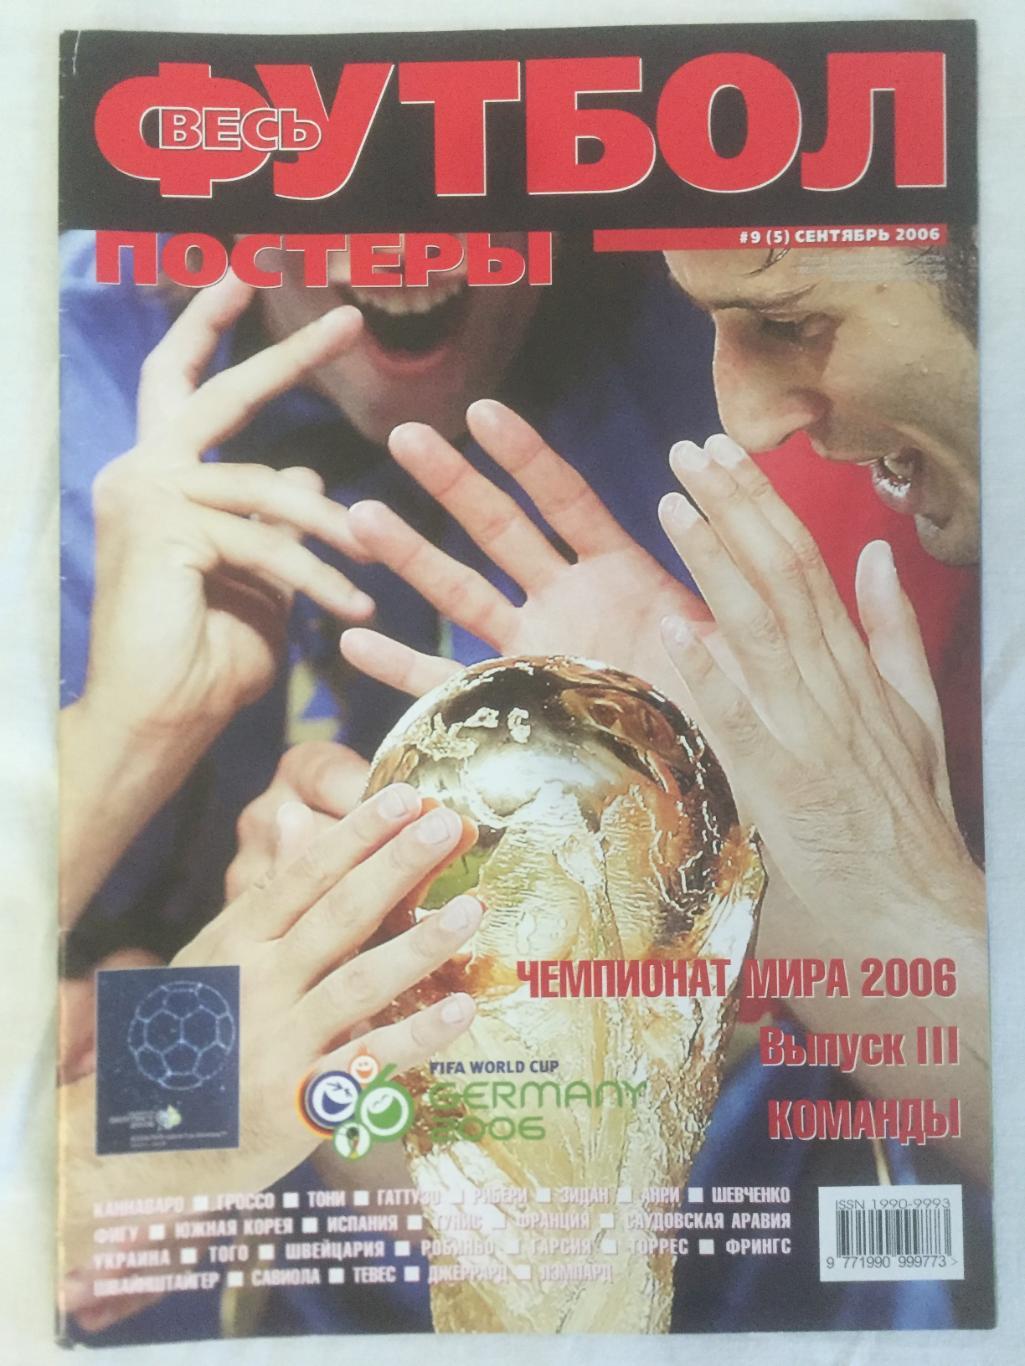 Весь футбол-постеры за сентябрь 2006